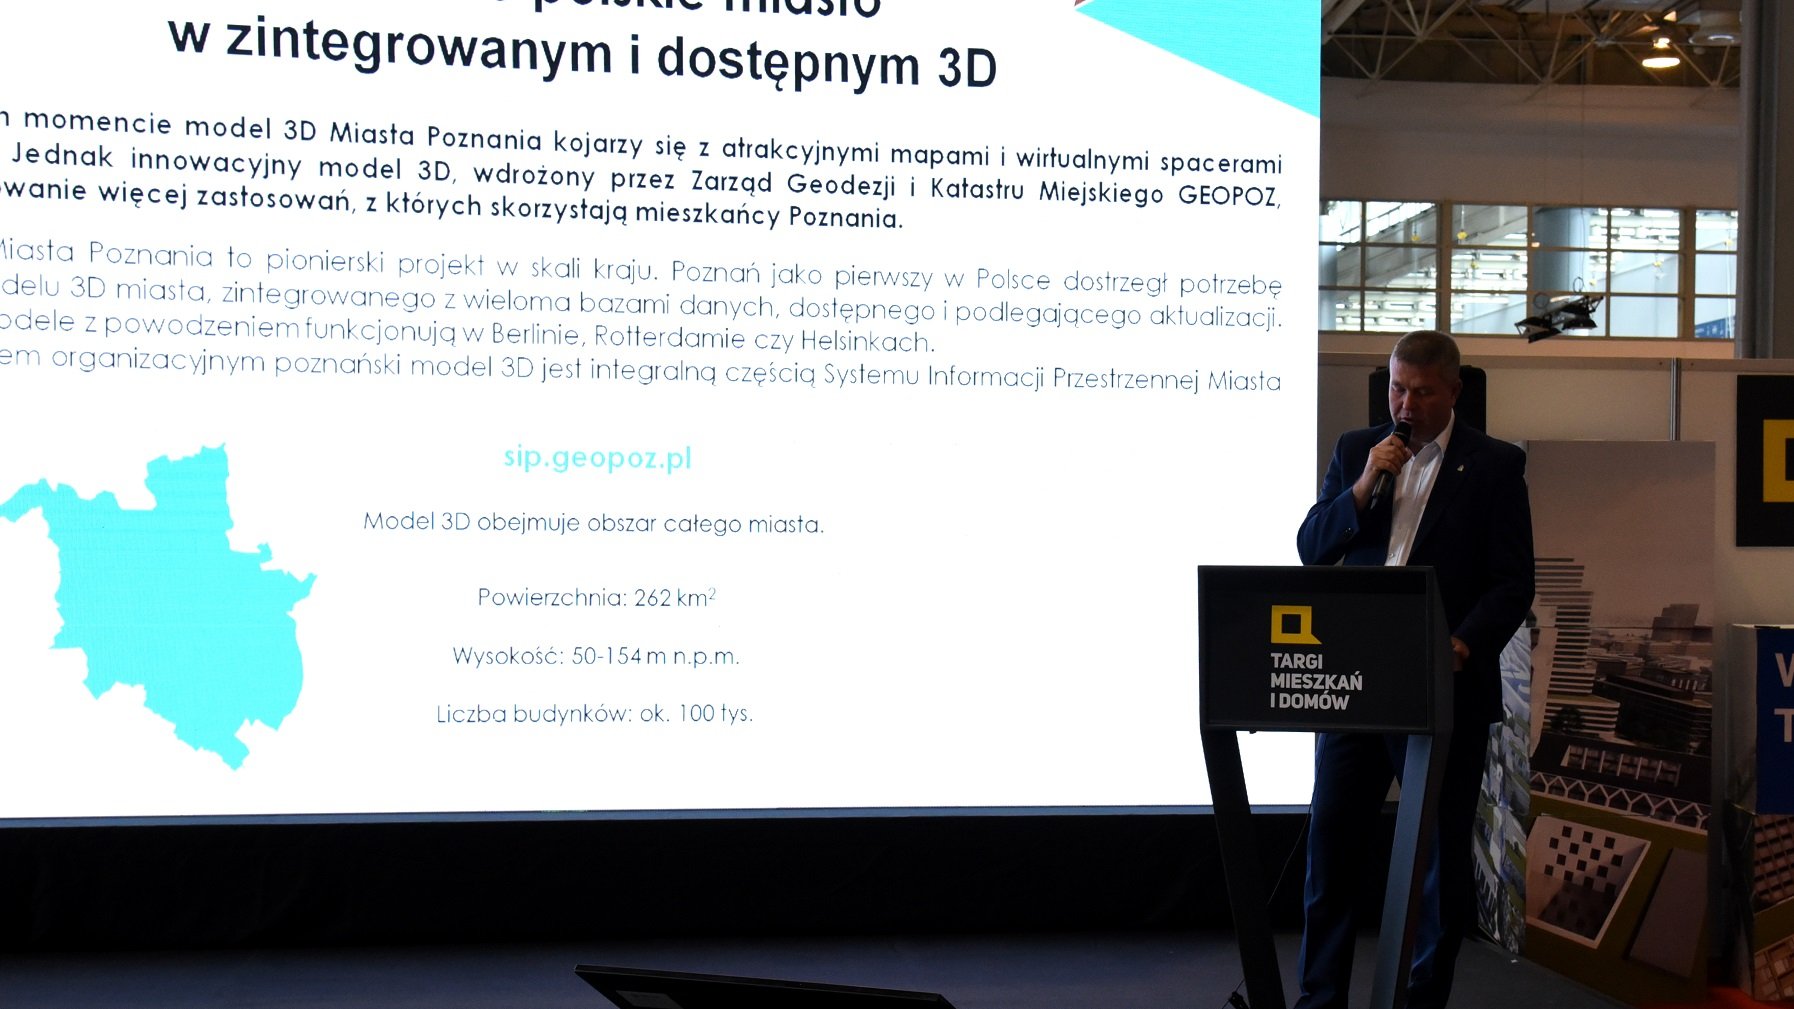 Poznań jest pierwszym polskim miastem w zintegrowanym i dostępnym 3D